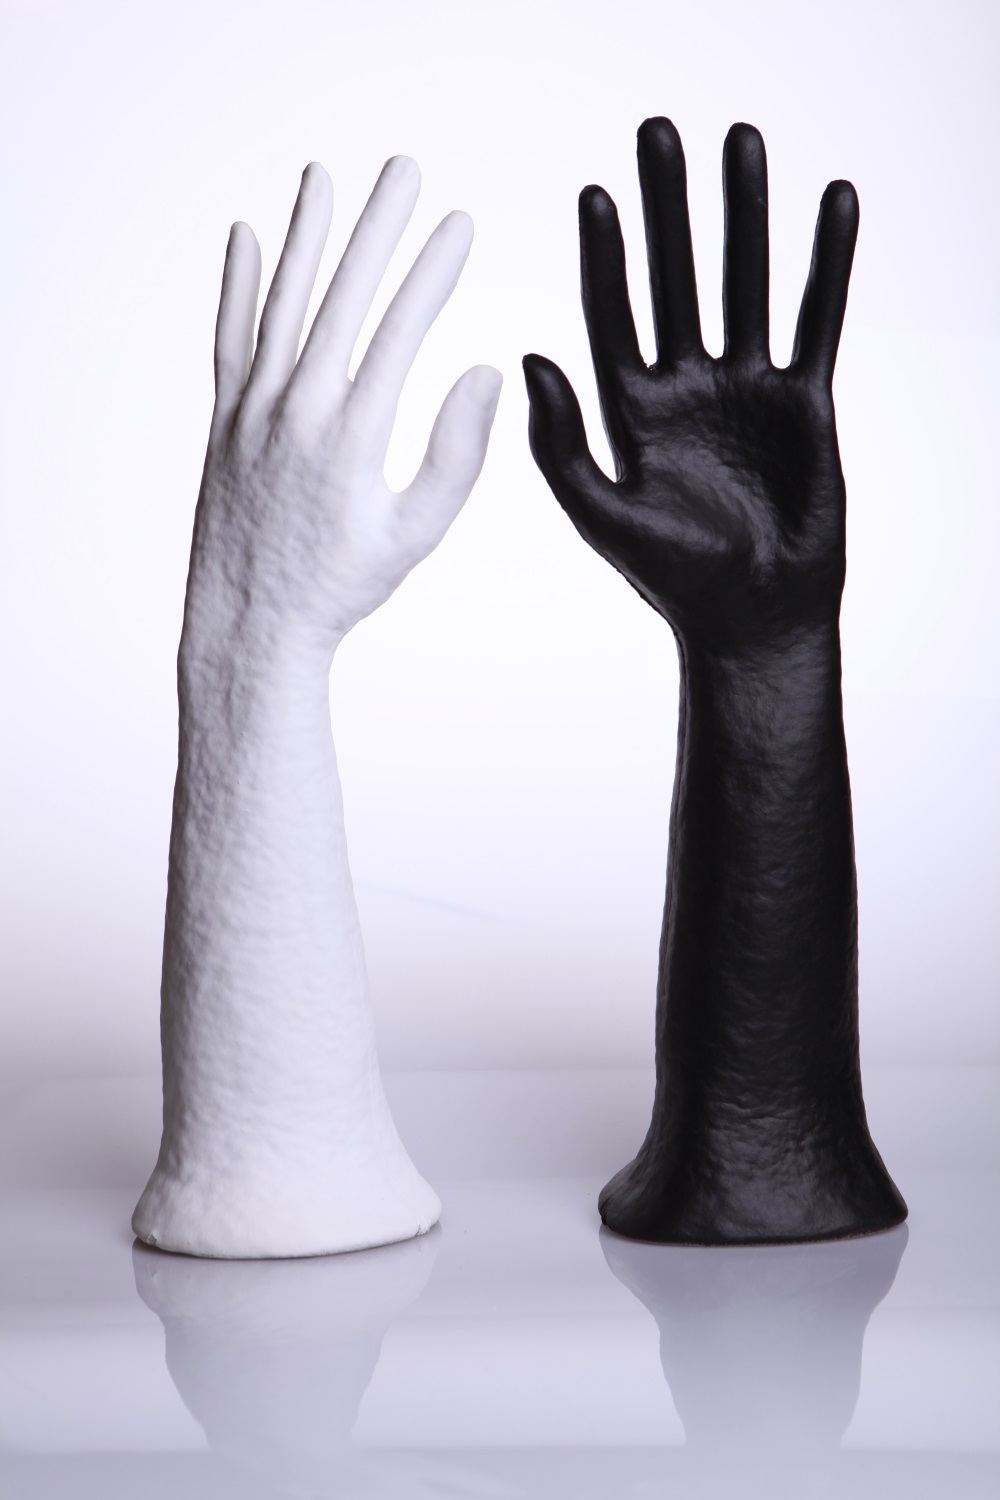 Schmuckdisplay "ÖKO" Hand Größe 39x12cm, Farbe: schwarz